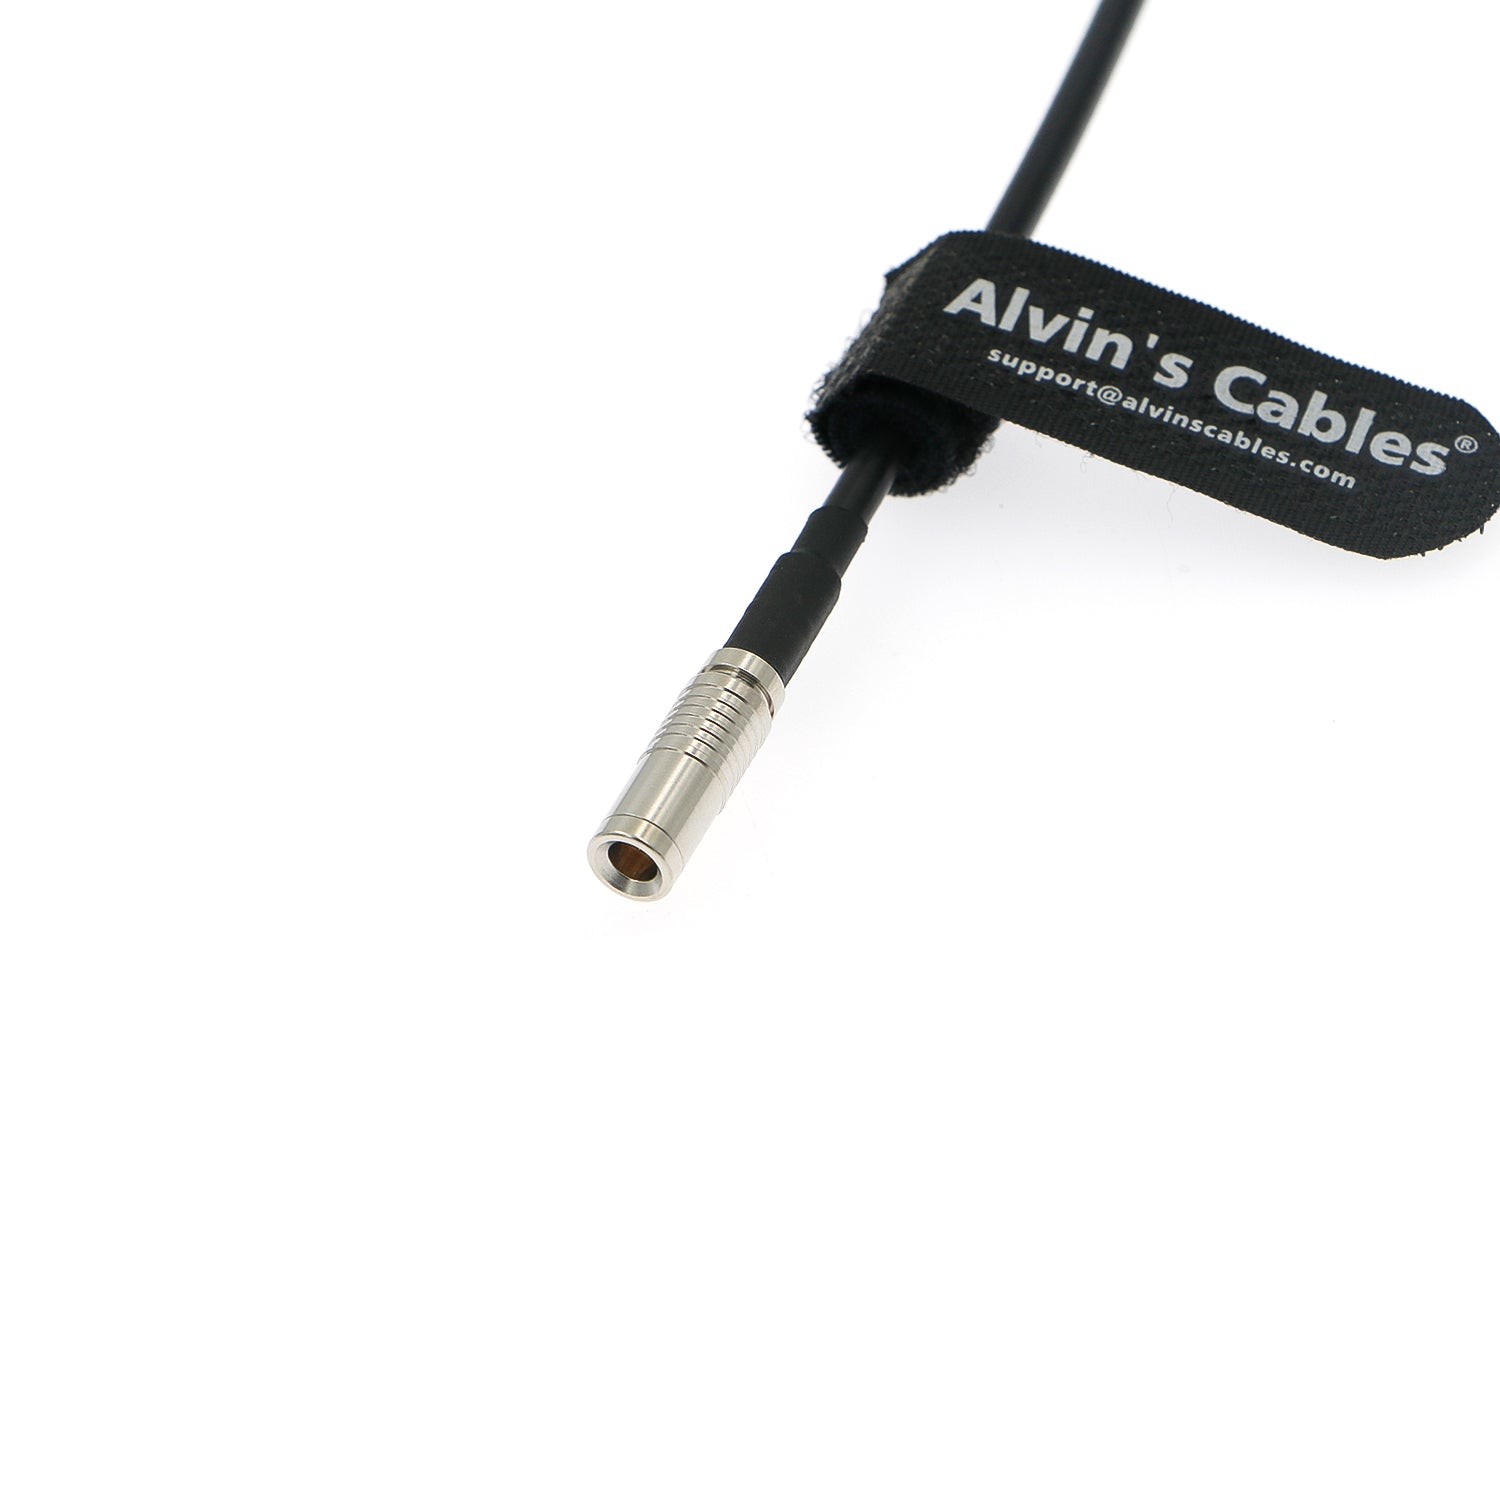 Alvin’s Cables Timecode-Kabel für Canon R5C Kamera von Atomos Ultrasync One Gerades DIN-auf-DIN-Timecode-Kabel 30 cm | 12 Zoll